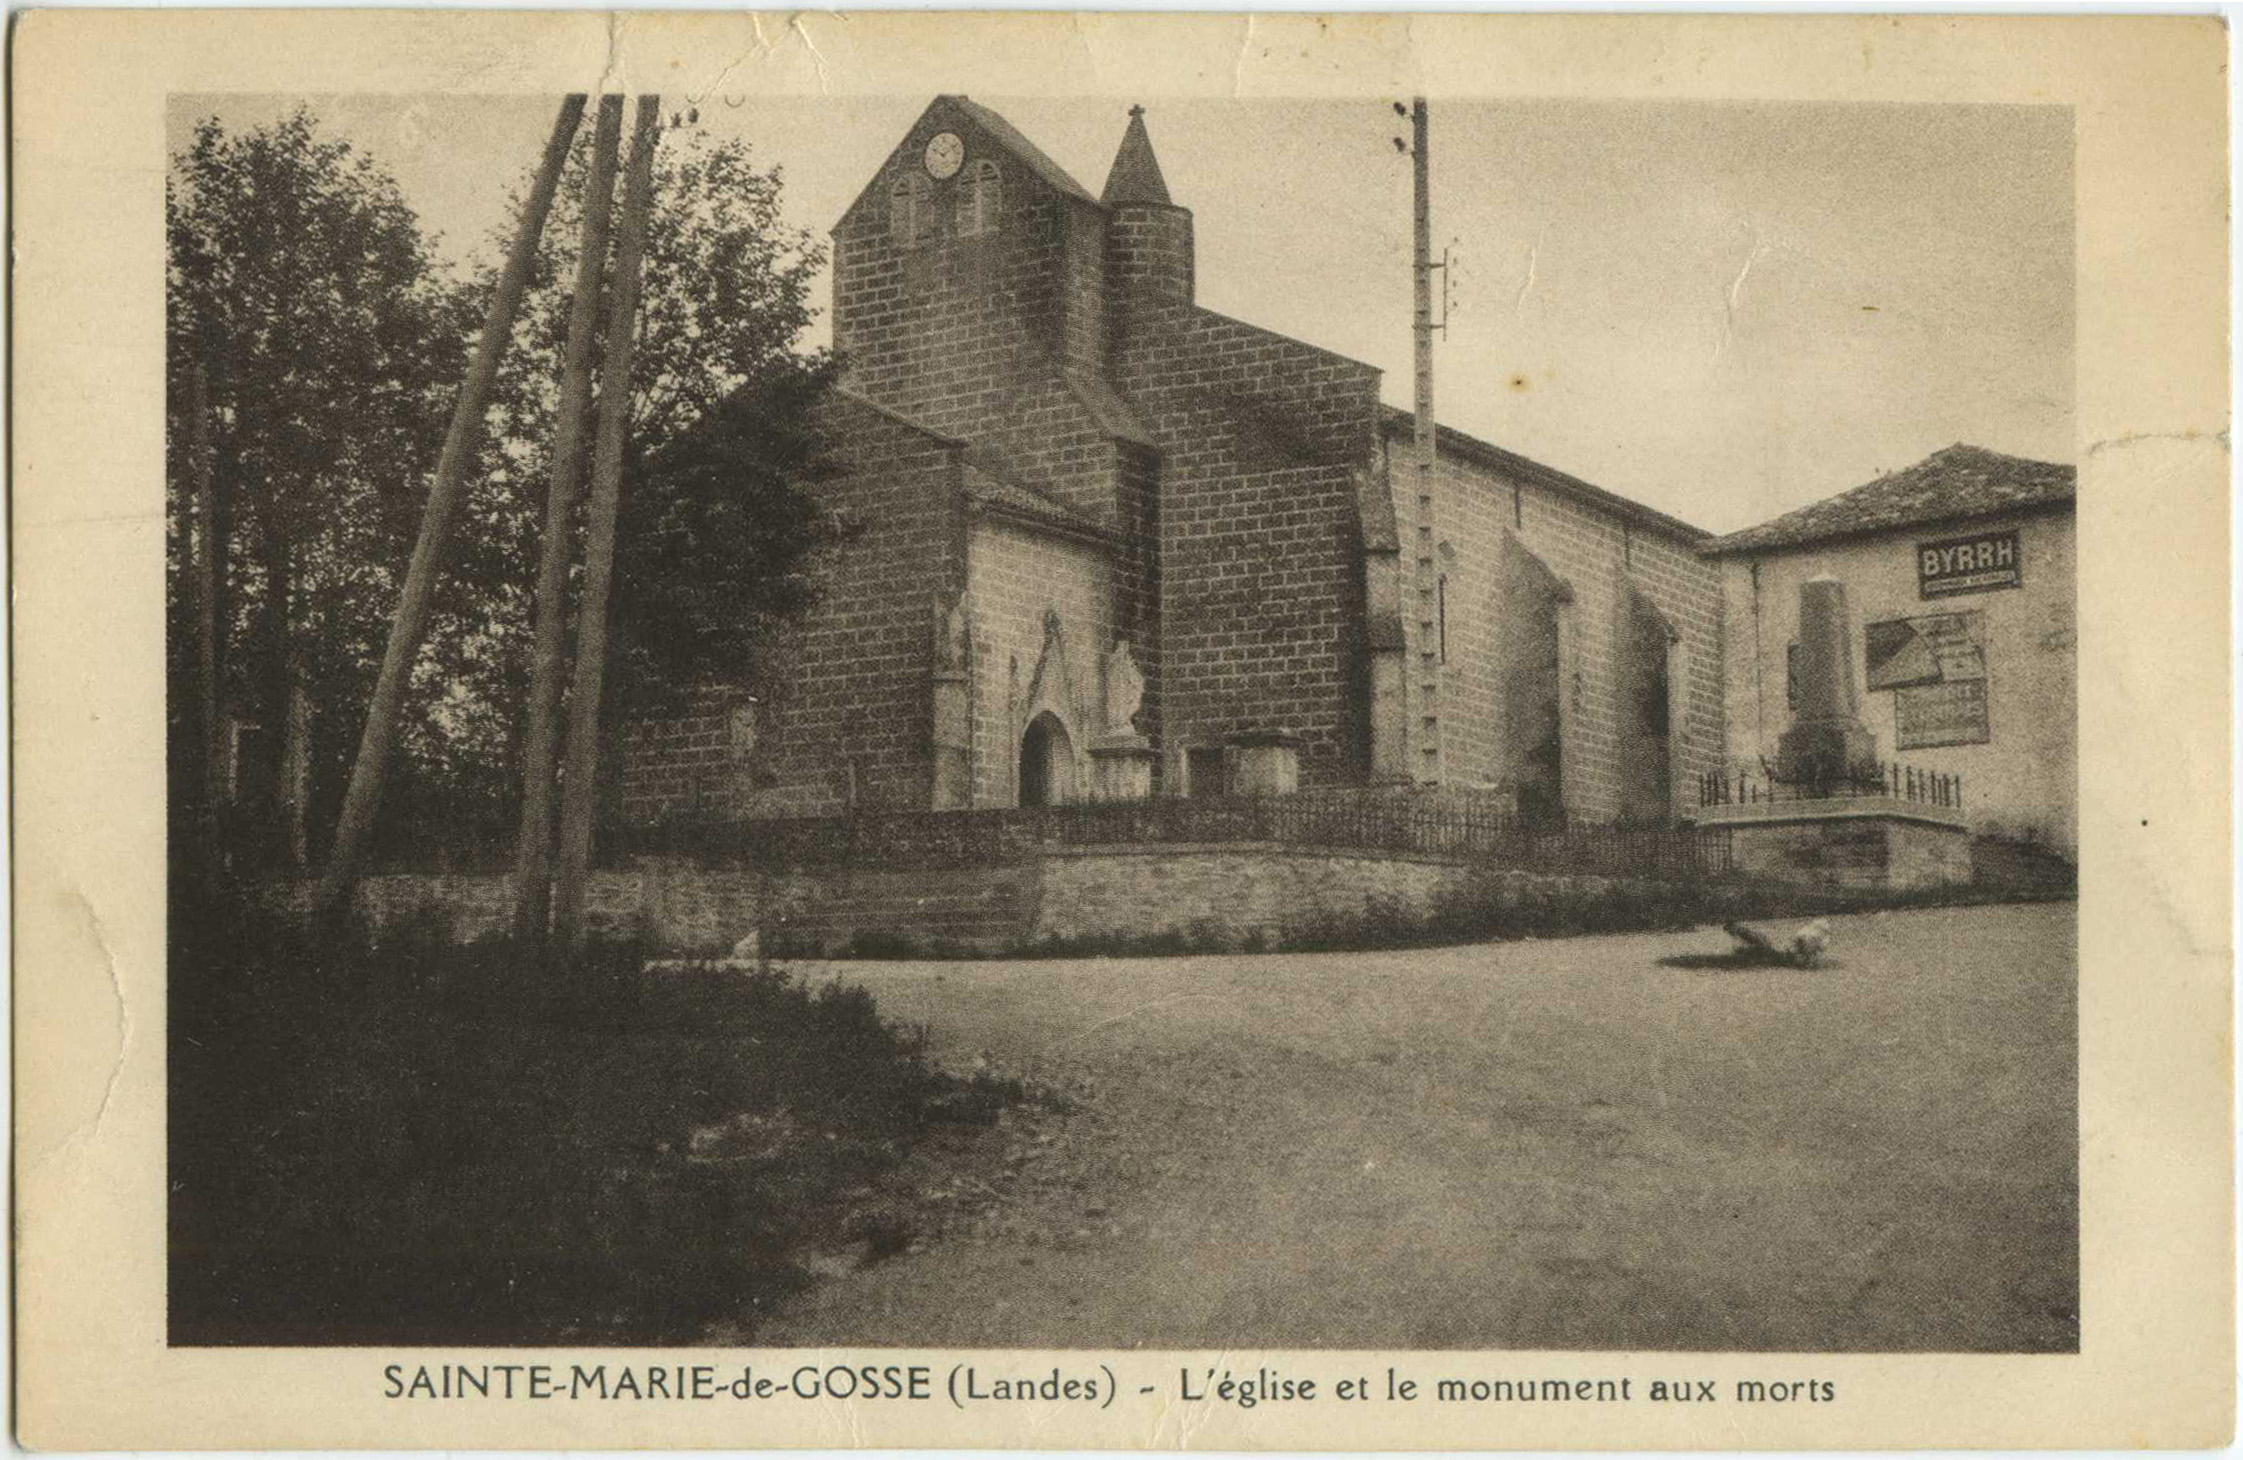 Sainte-Marie-de-Gosse - L'église et le monument aux morts